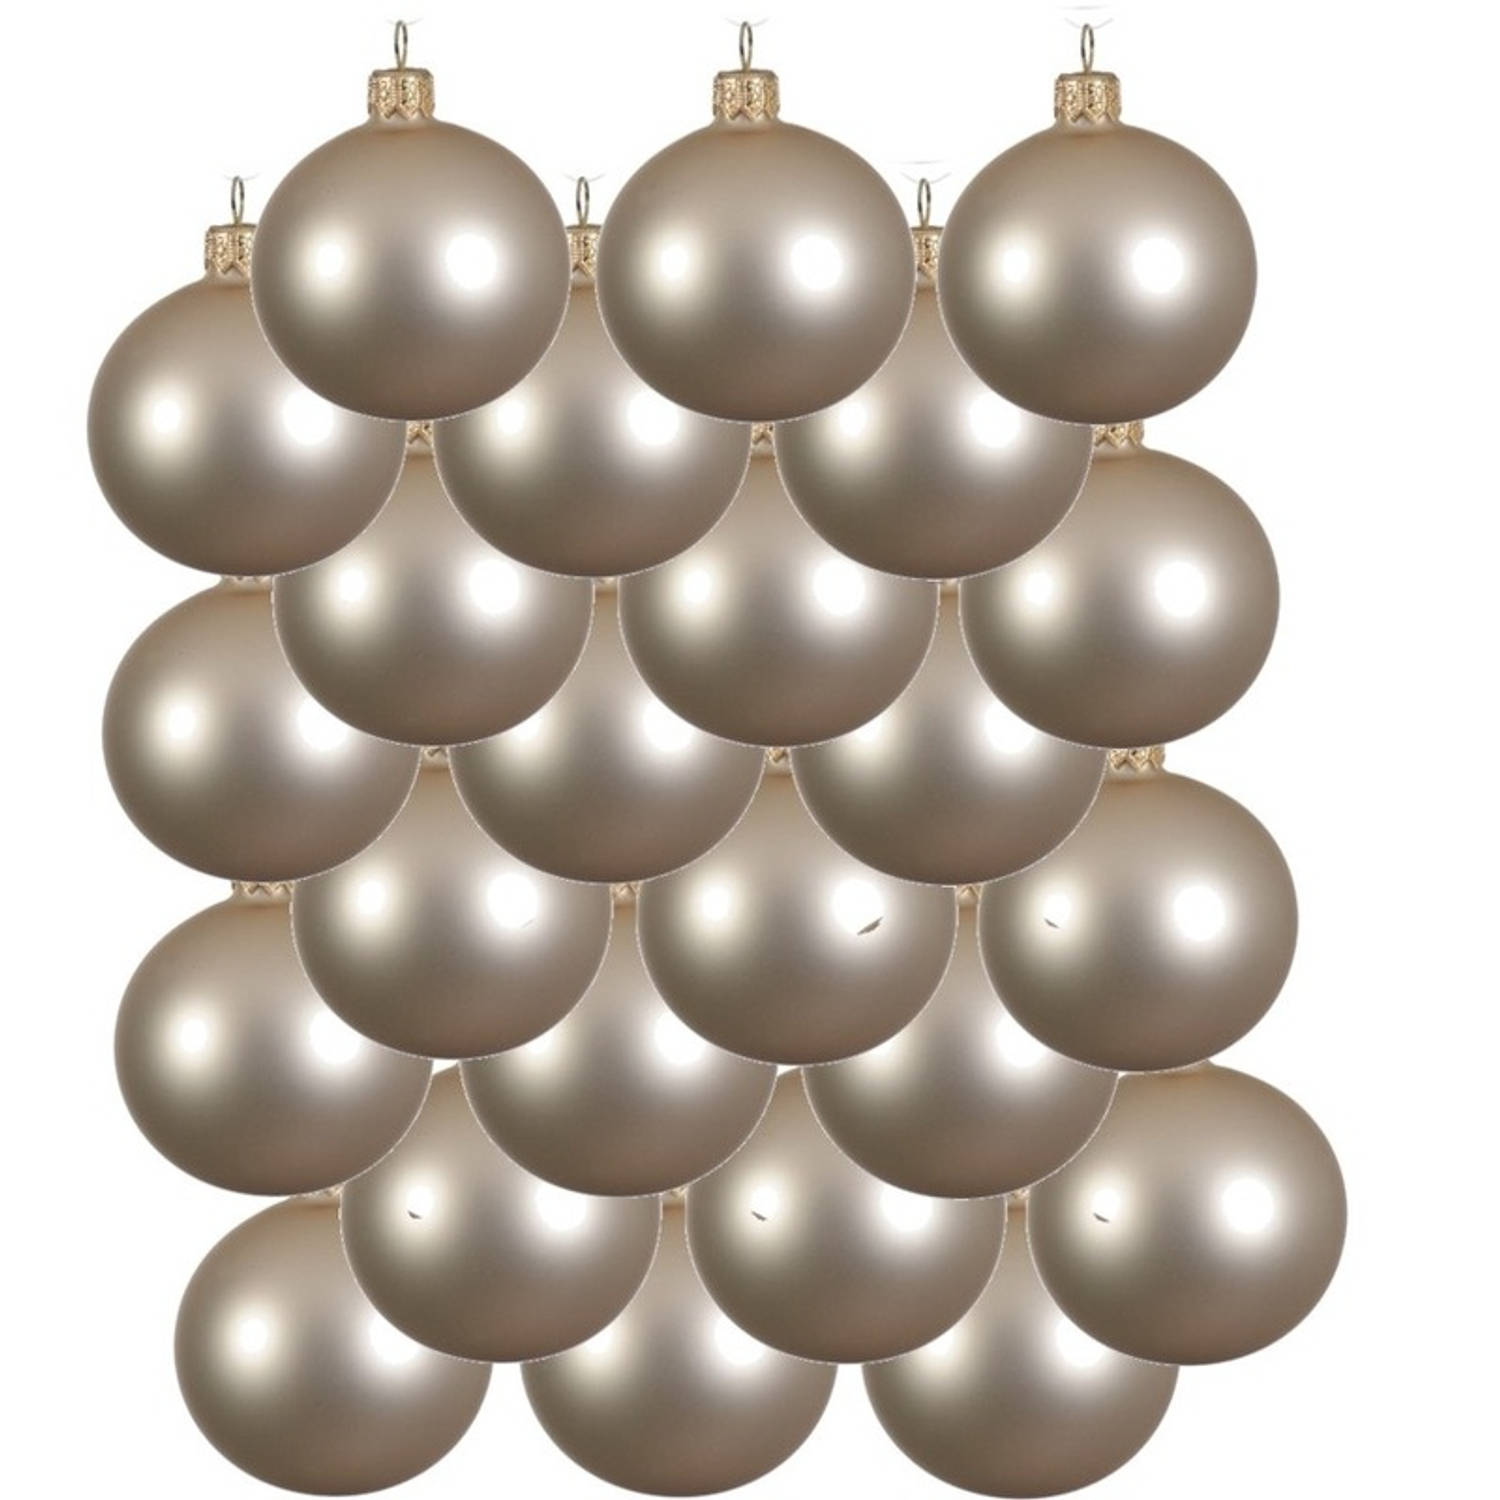 24x Glazen kerstballen mat licht parel/champagne 6 cm kerstboom versiering/decoratie - Kerstbal